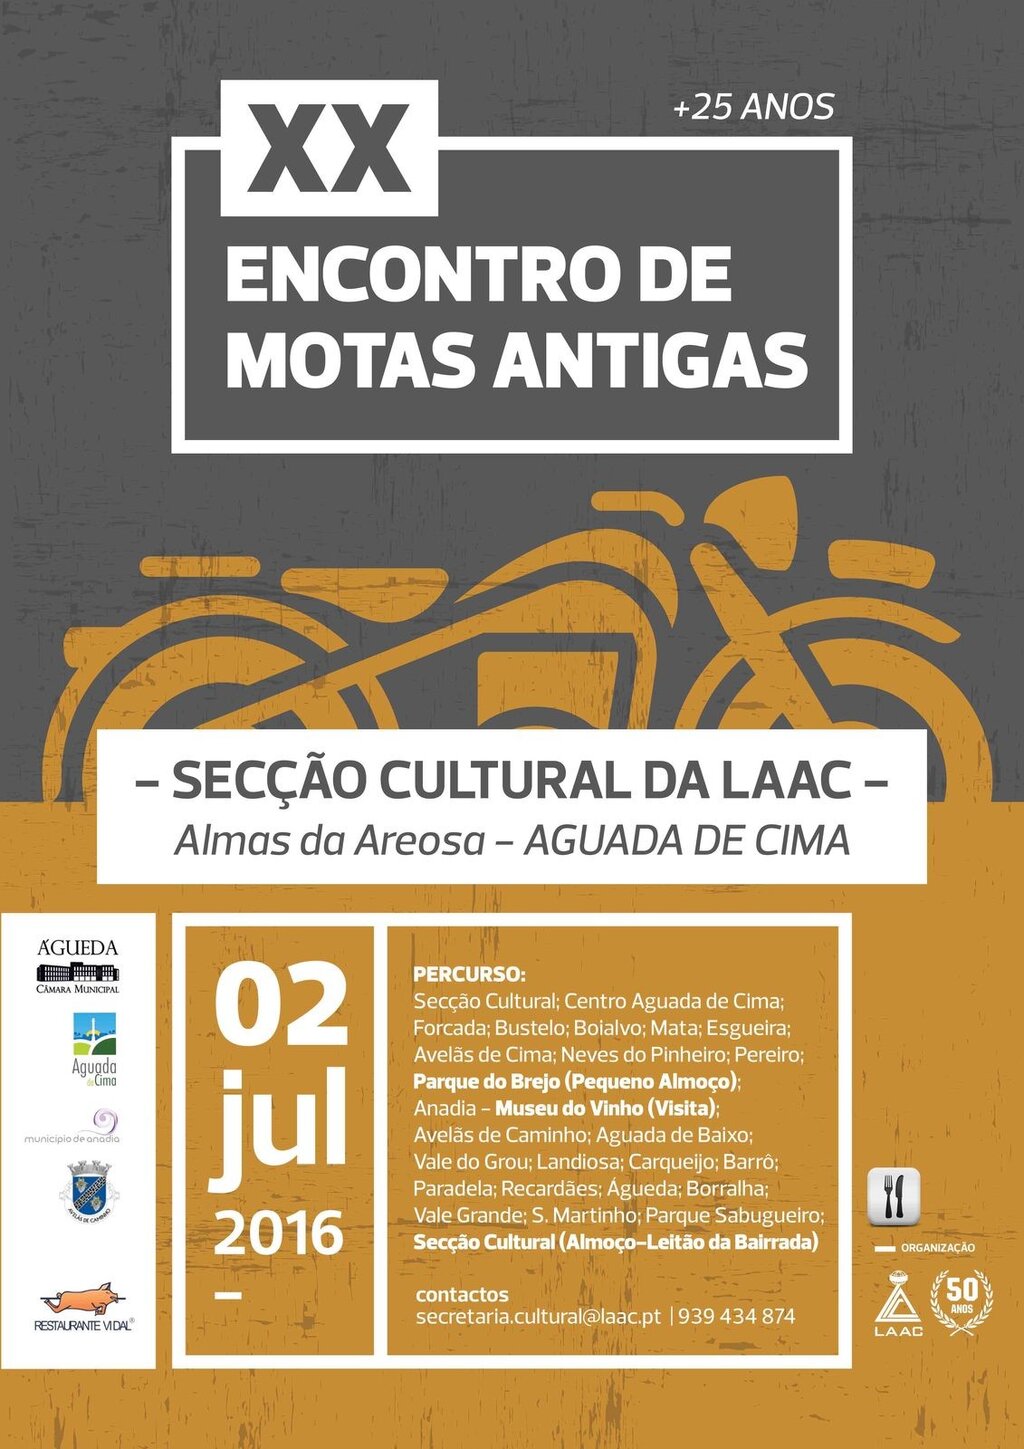 XX Encontro Motas Antigas_Secção Cultural da LAAC_Aguada de Cima